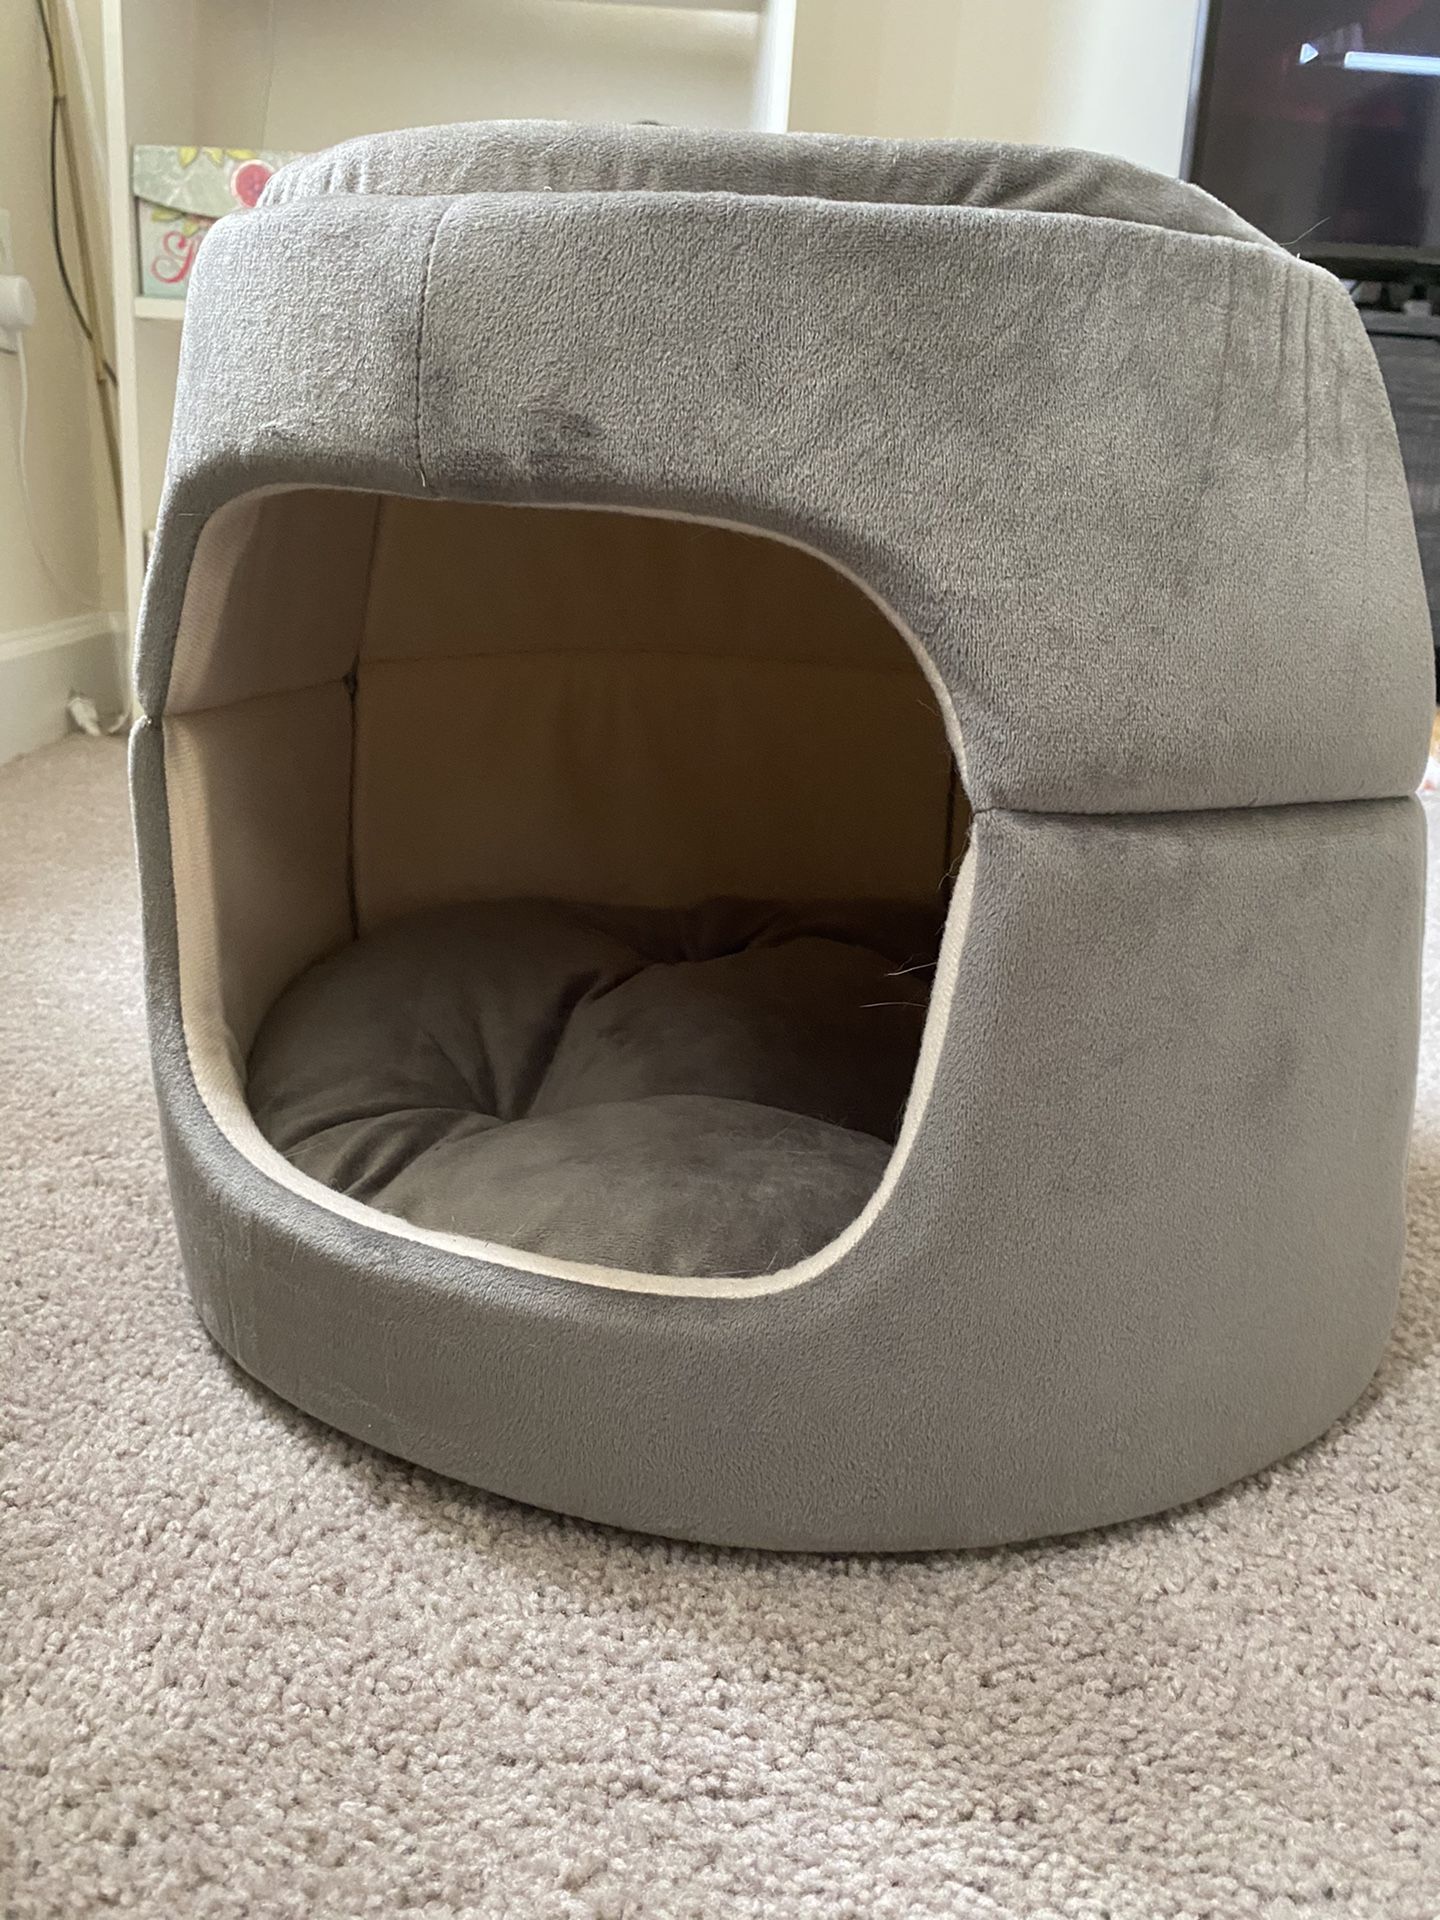 Medium size Cat Bed